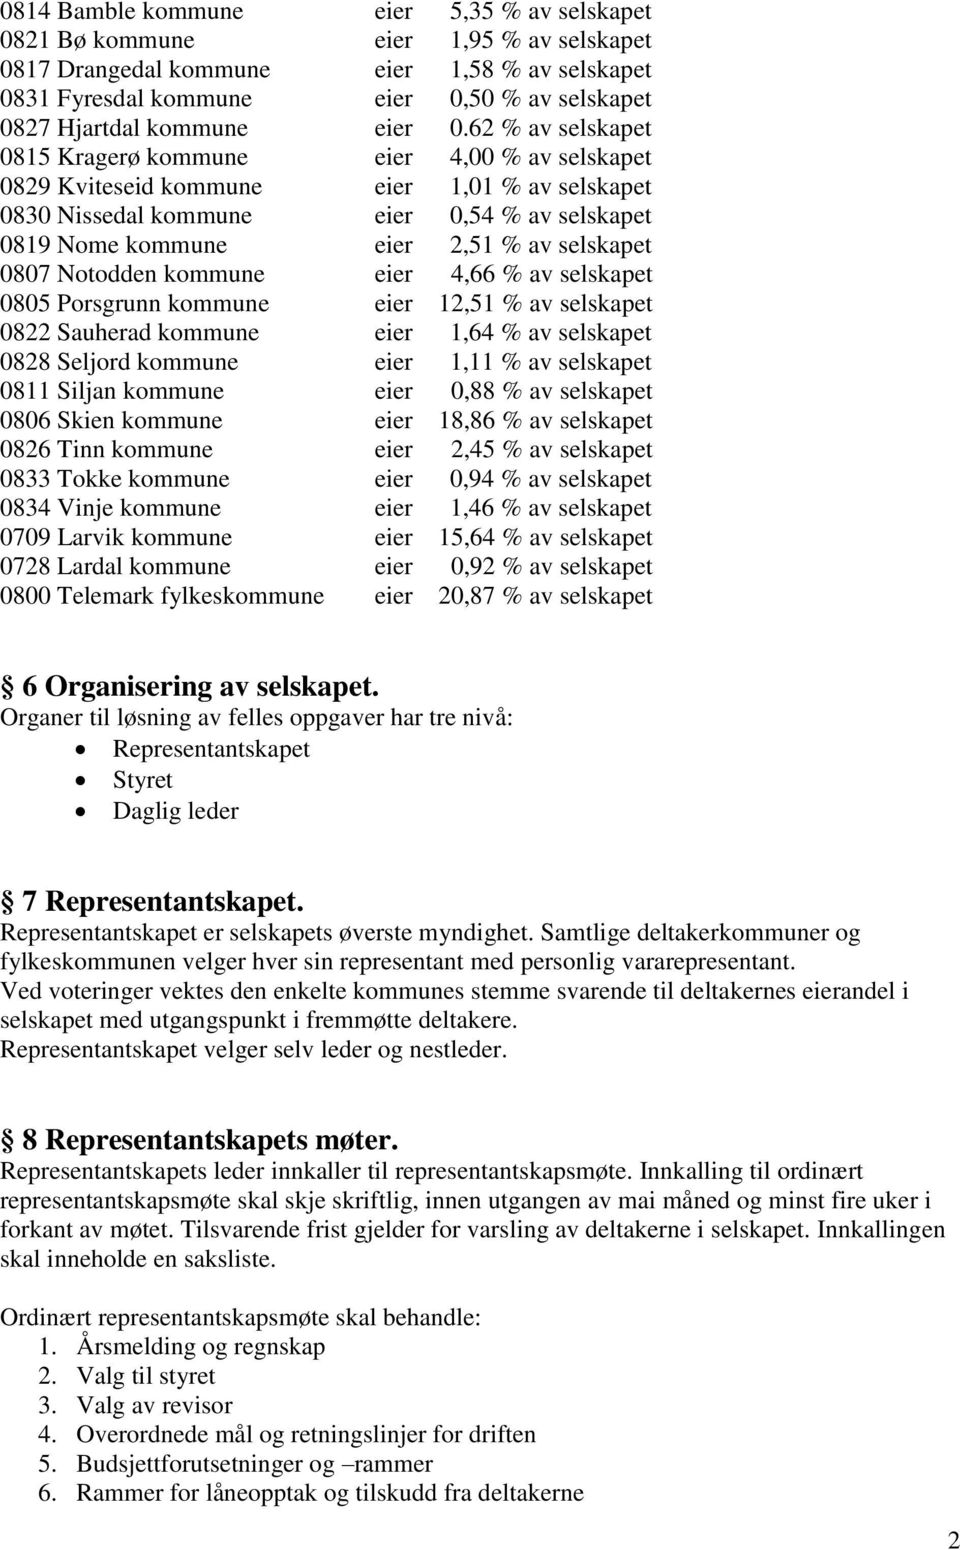 62 % av selskapet 0815 Kragerø kommune eier 4,00 % av selskapet 0829 Kviteseid kommune eier 1,01 % av selskapet 0830 Nissedal kommune eier 0,54 % av selskapet 0819 Nome kommune eier 2,51 % av